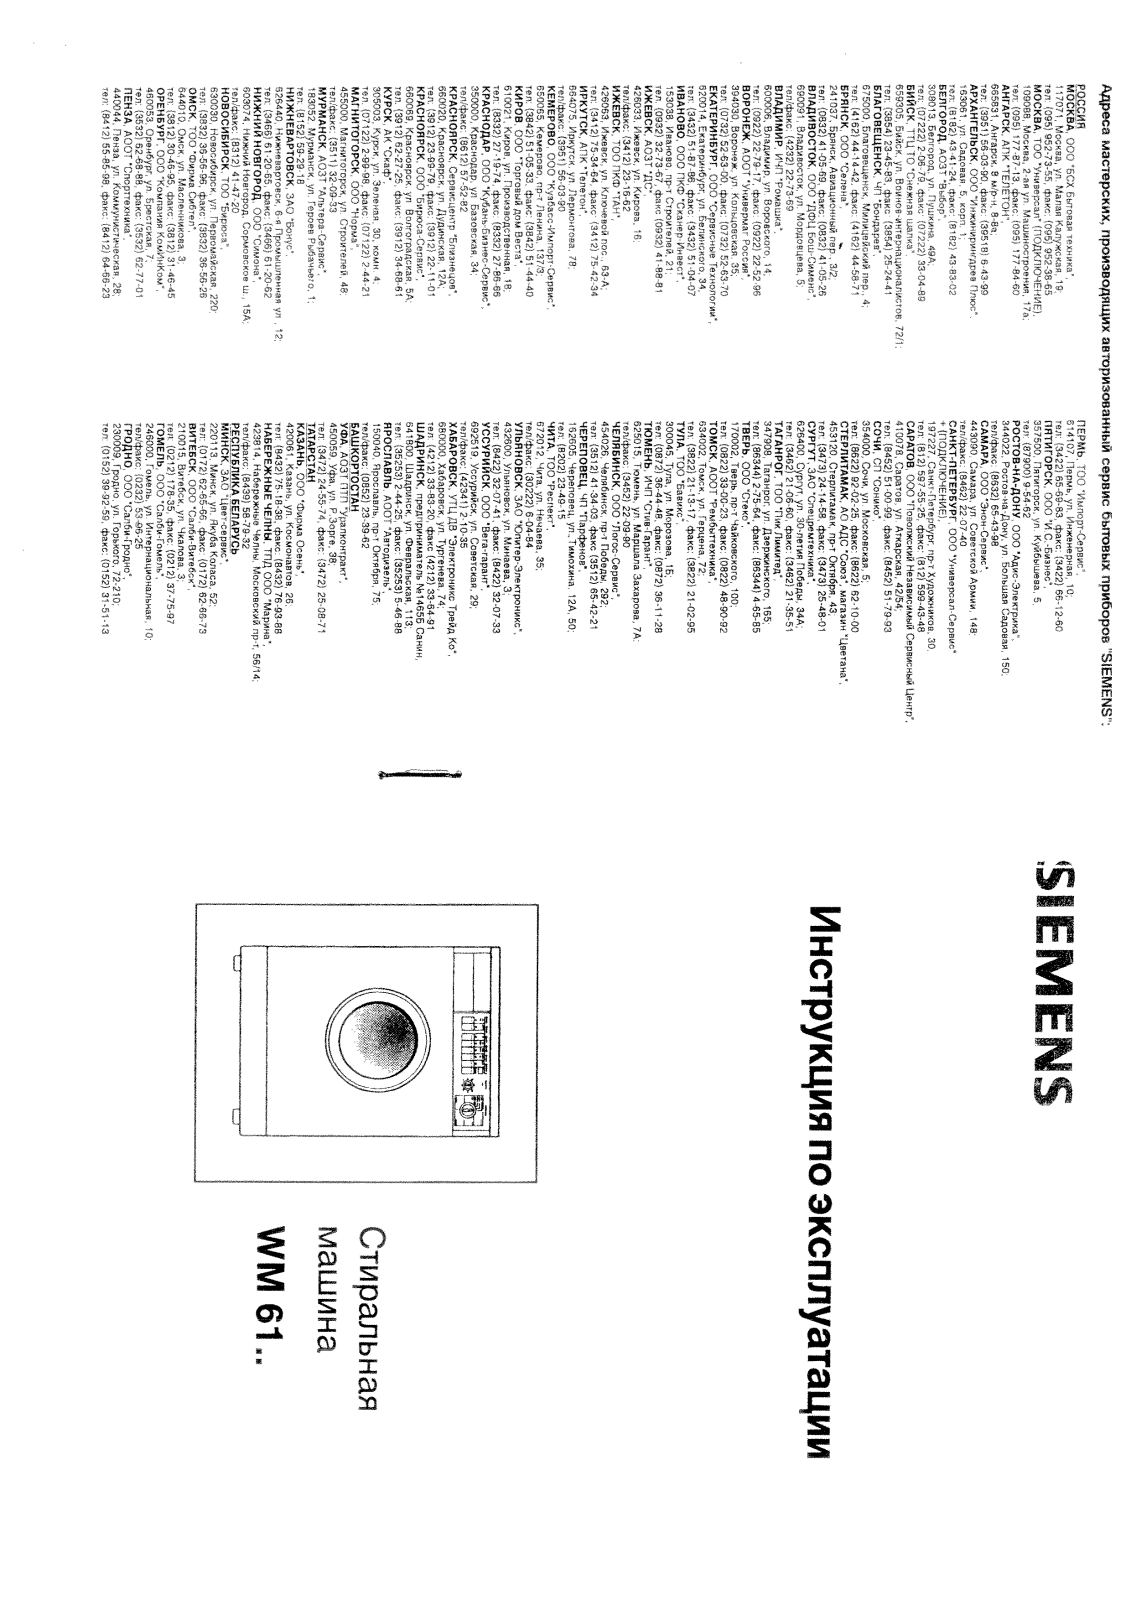 Siemens Siwamat 6100, Siwamat 6102, Siwamat 6103, Siwamat 6104, Siwamat 6120 User Manual